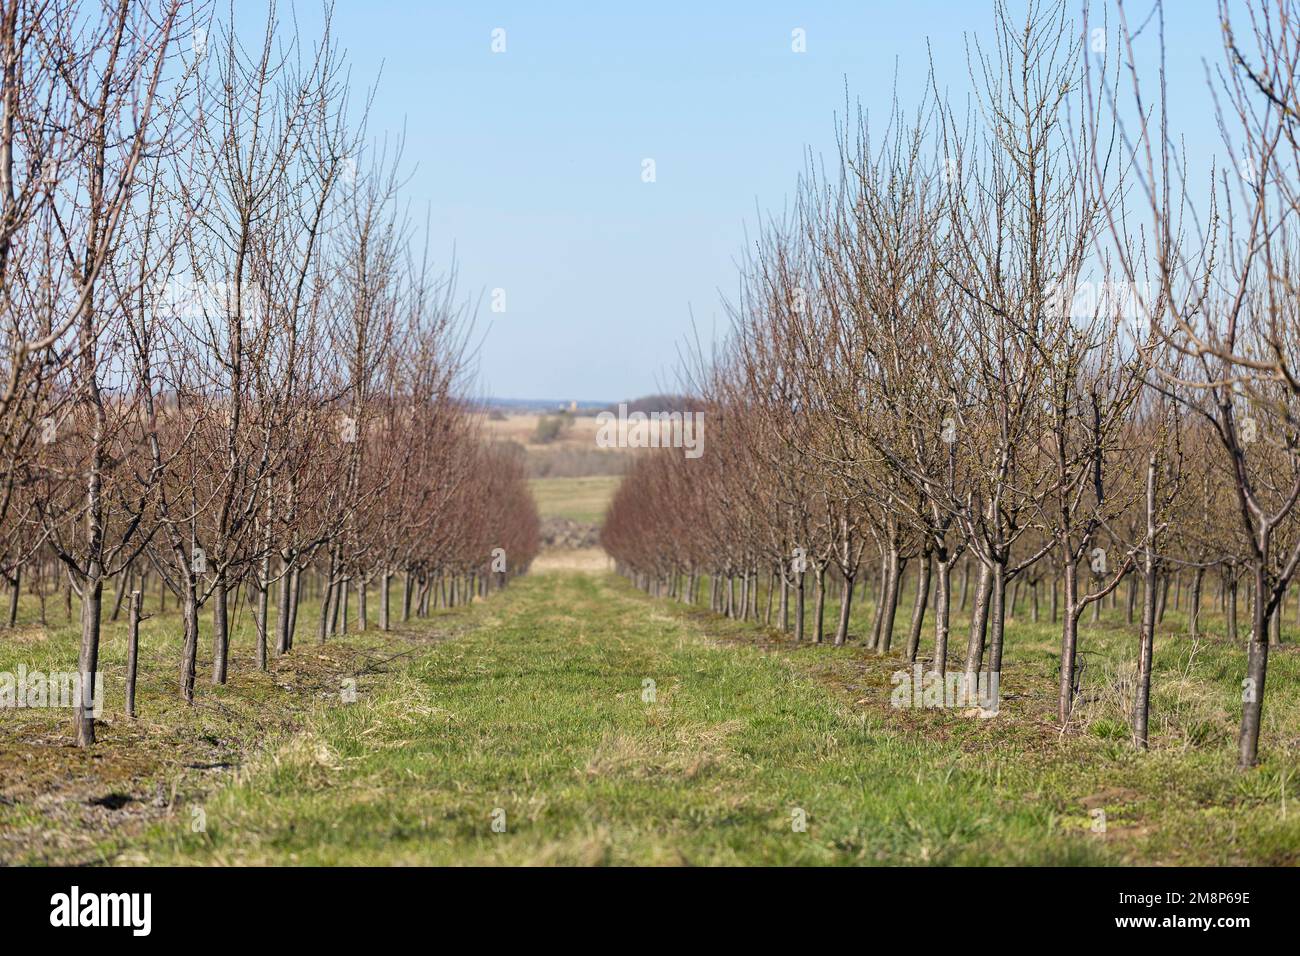 Jardin de prunes au début du printemps avant la floraison. Des rangées de pruniers dans un verger moderne. Agriculture. Des rangées de pruniers poussent. Banque D'Images